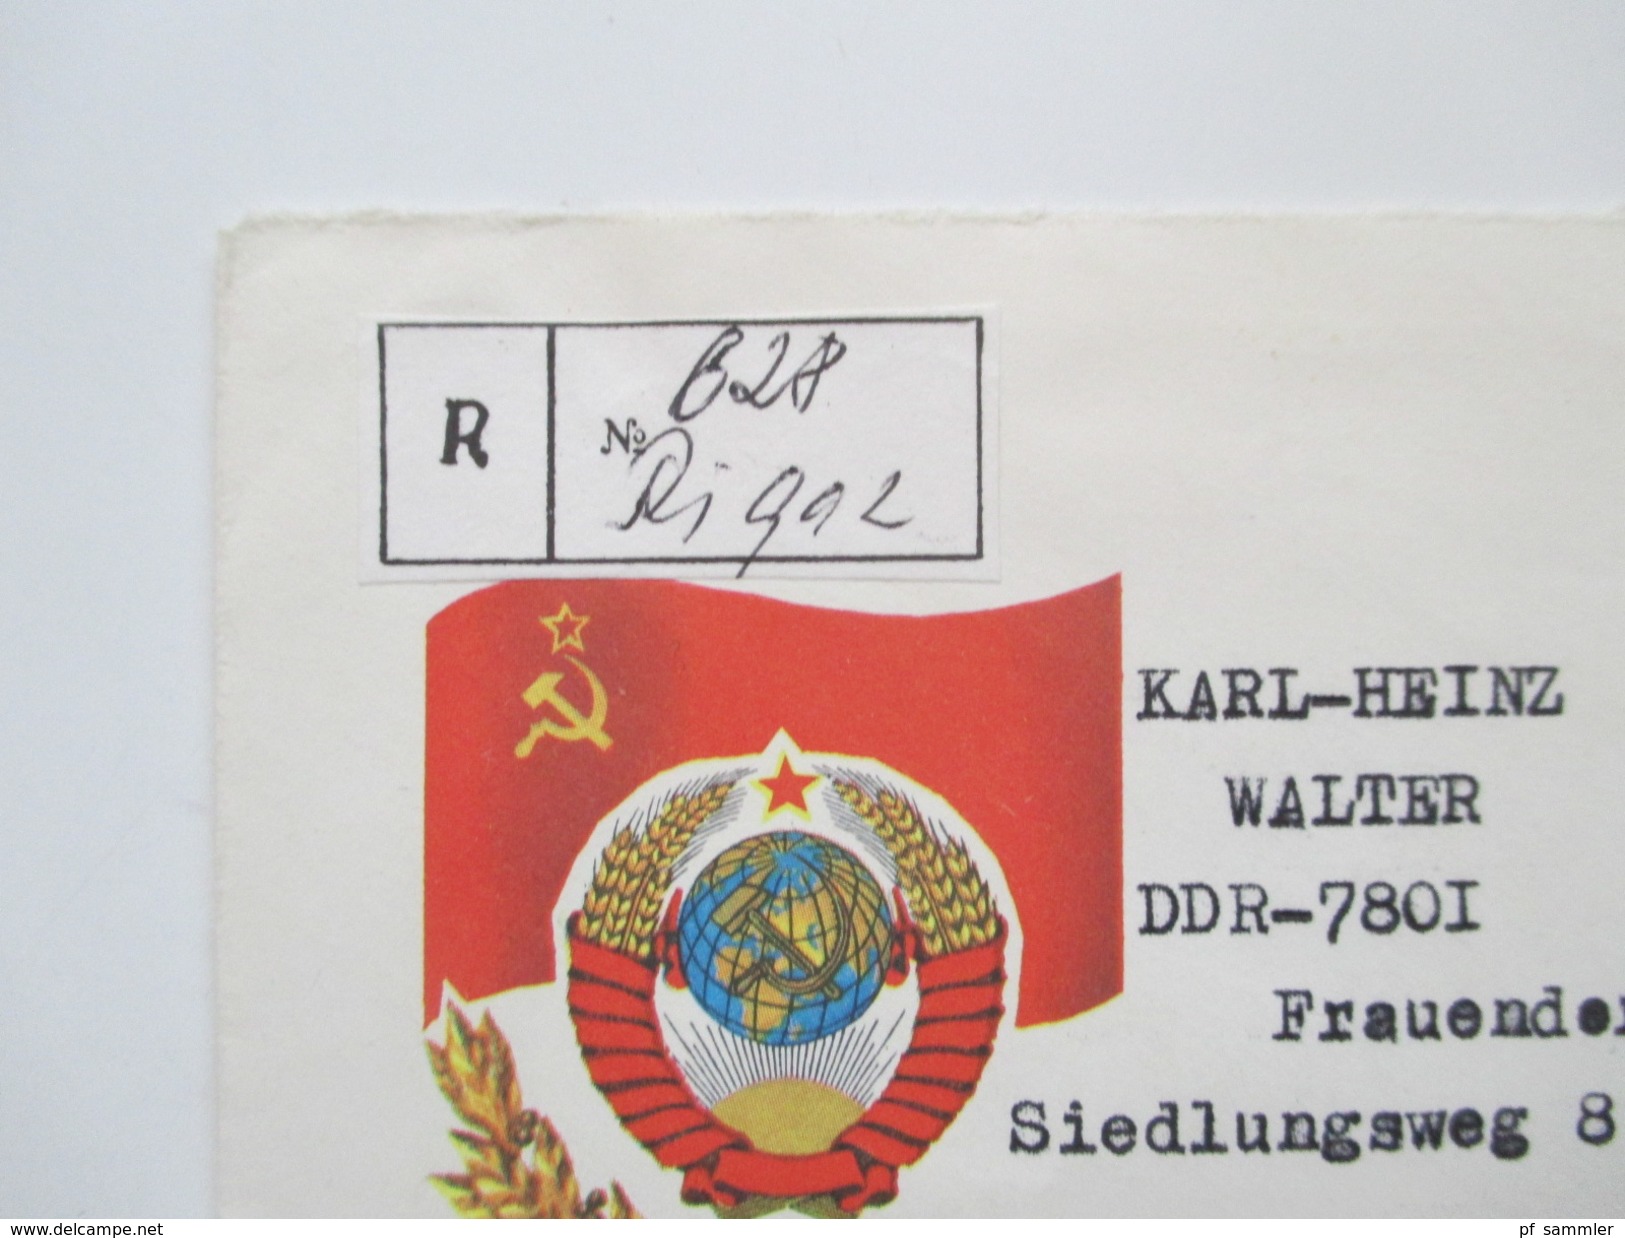 UDSSR GA / Belegeposten 140 Stk. Auch Riga / Pärnu / Lettland. R.S.S. de Lettonie. Weltraum usw. 1960 - 80er Jahre